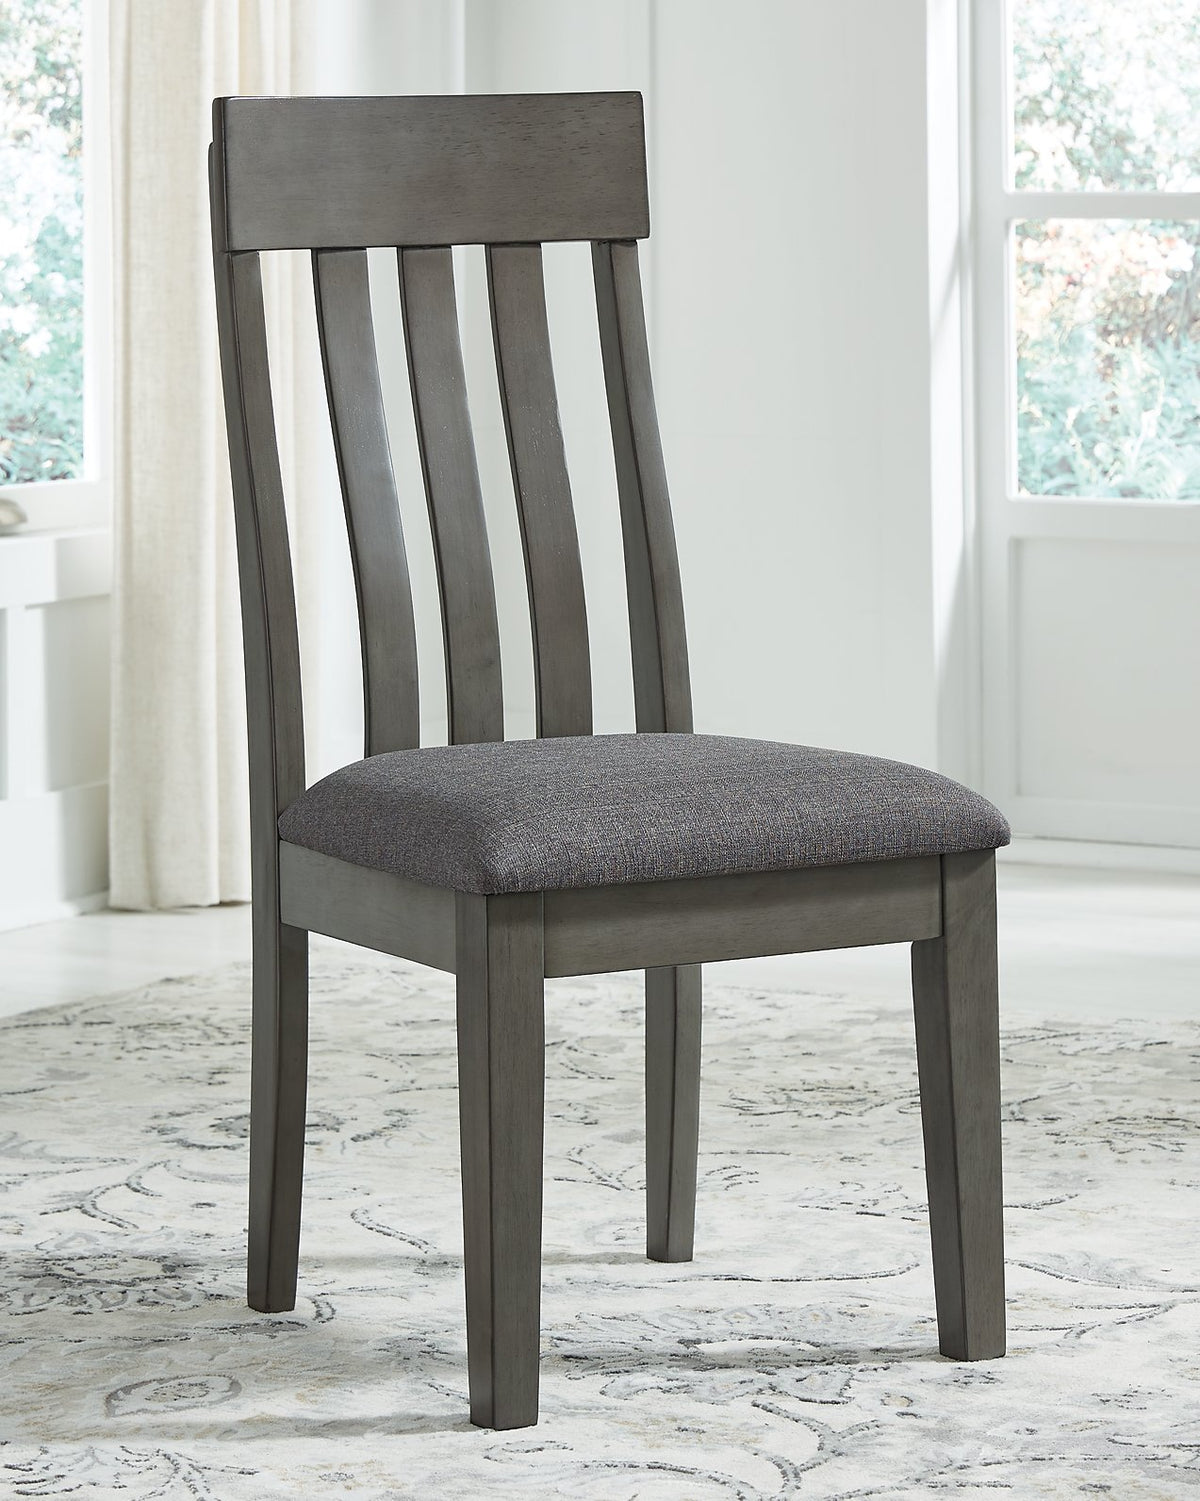 Hallanden Dining Chair  Half Price Furniture